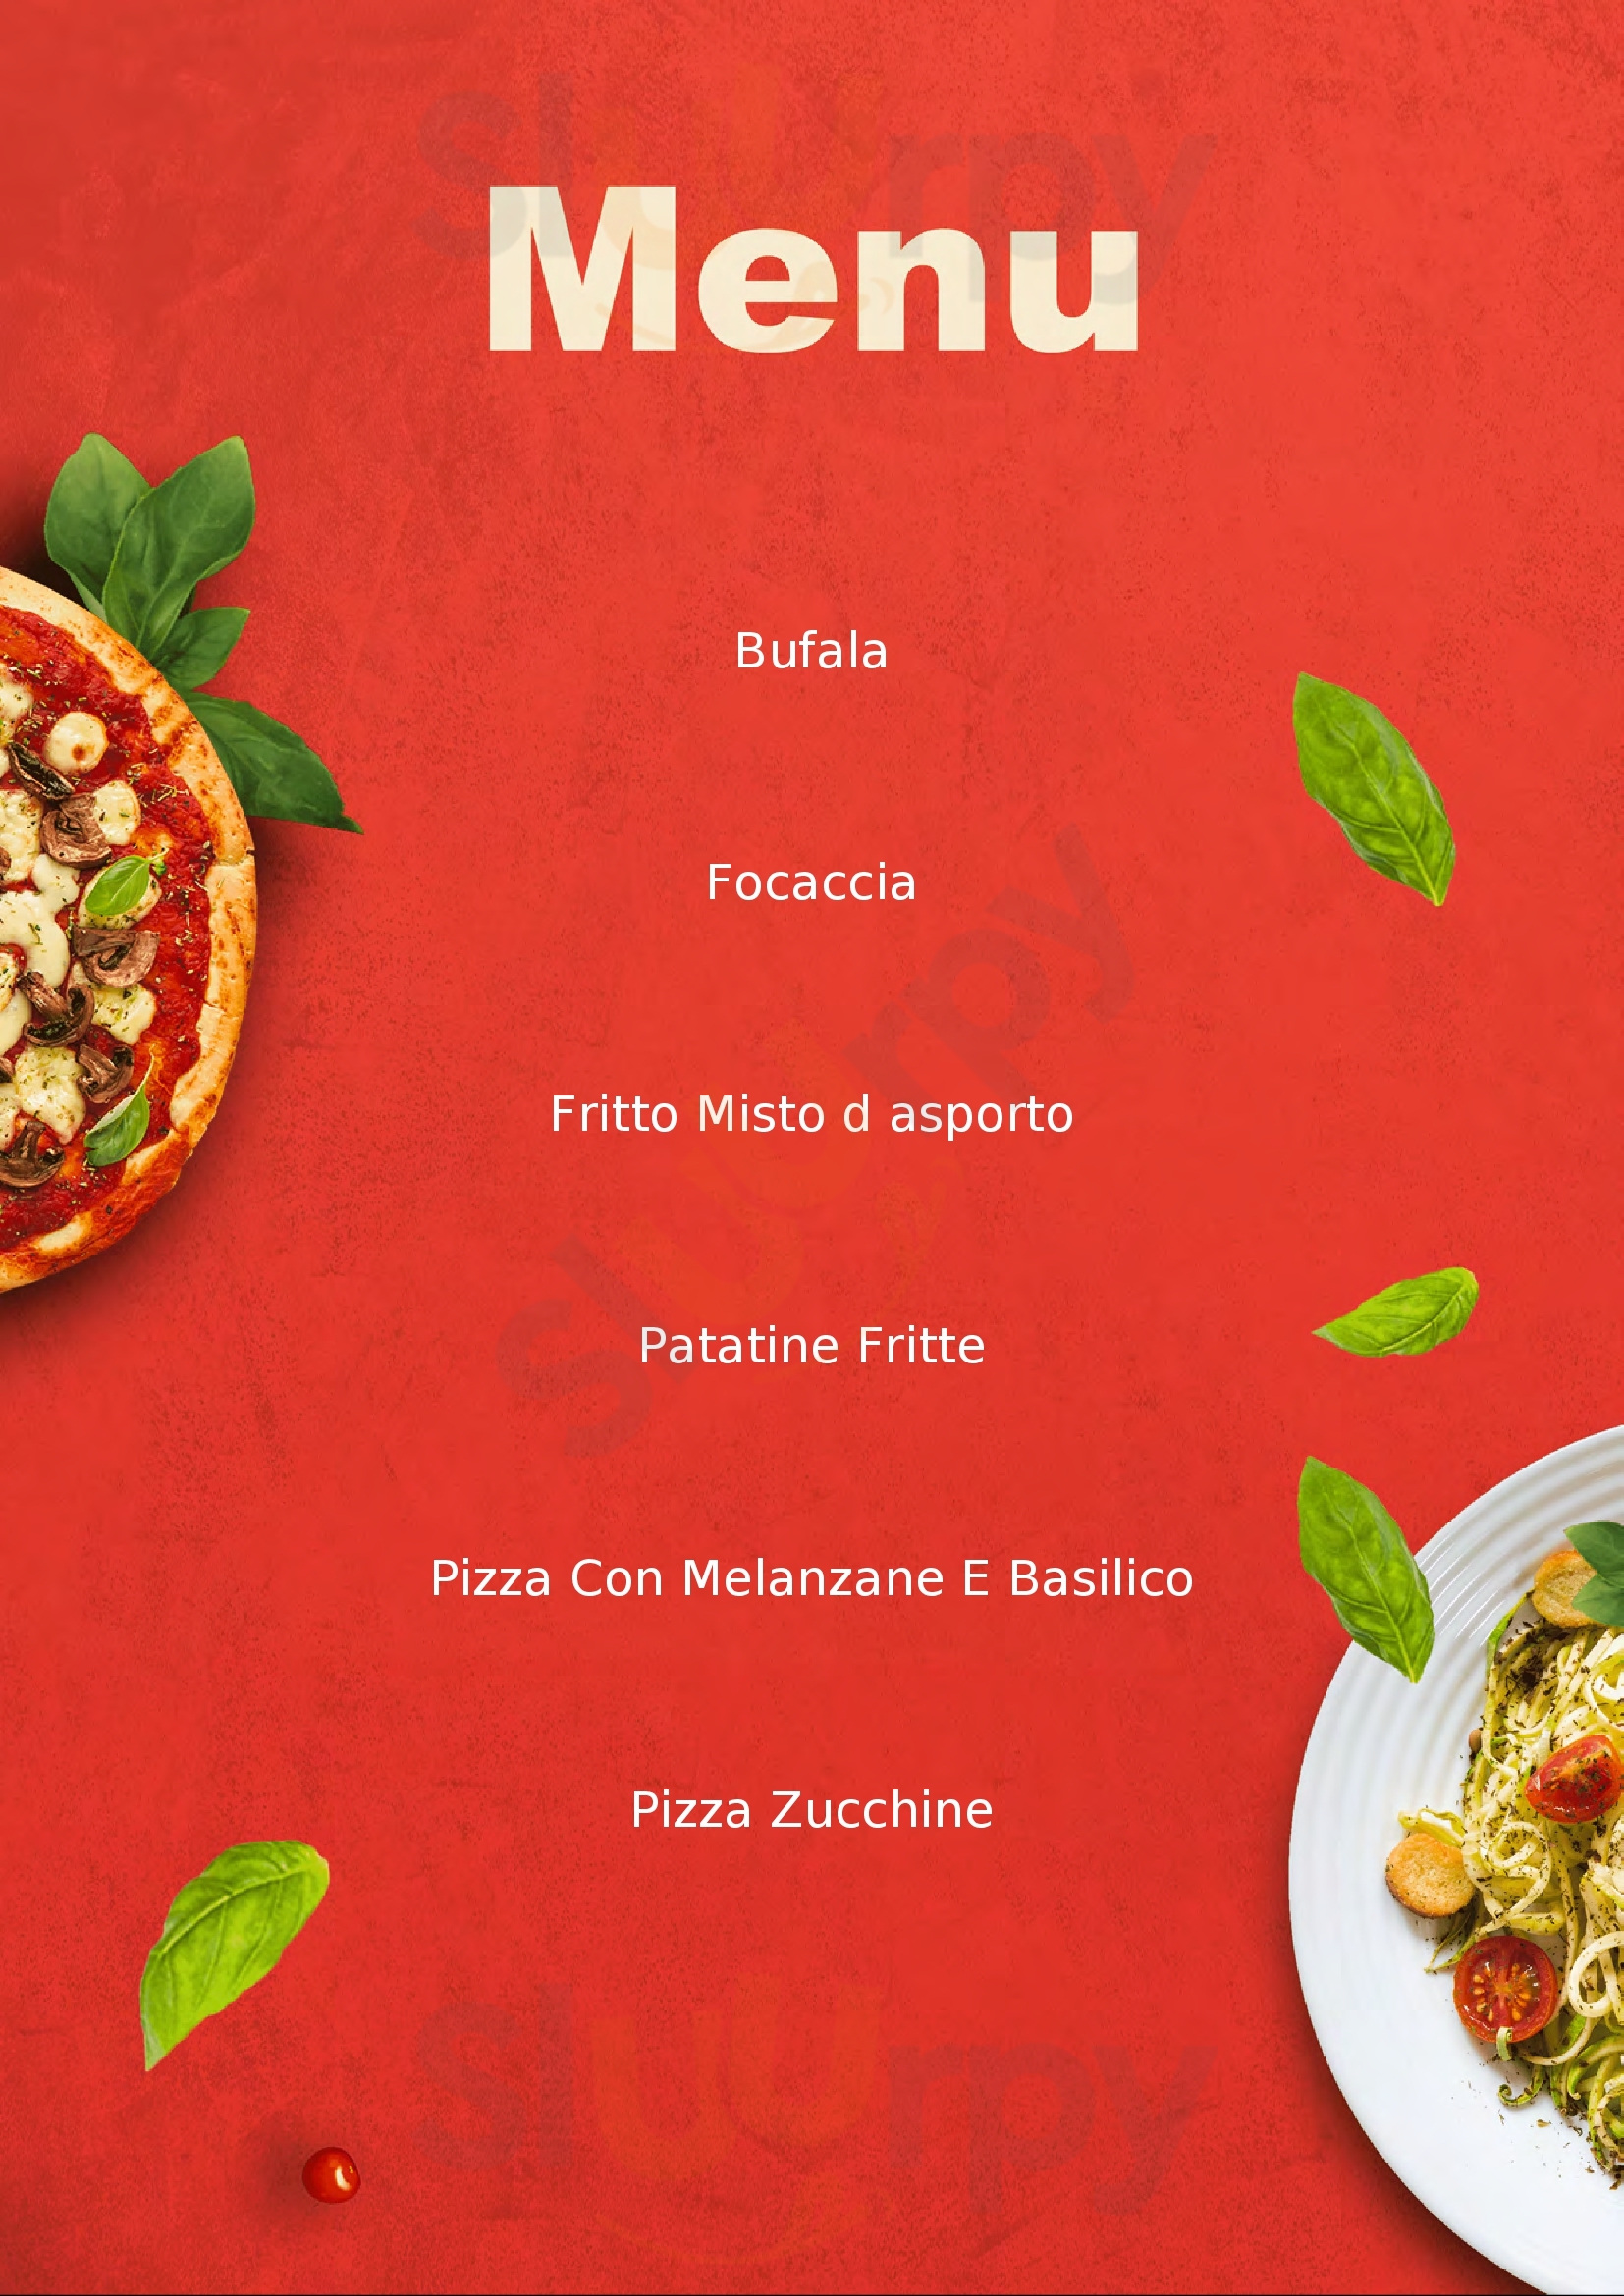 La Pizzeria Del Borgo Mezzano menù 1 pagina